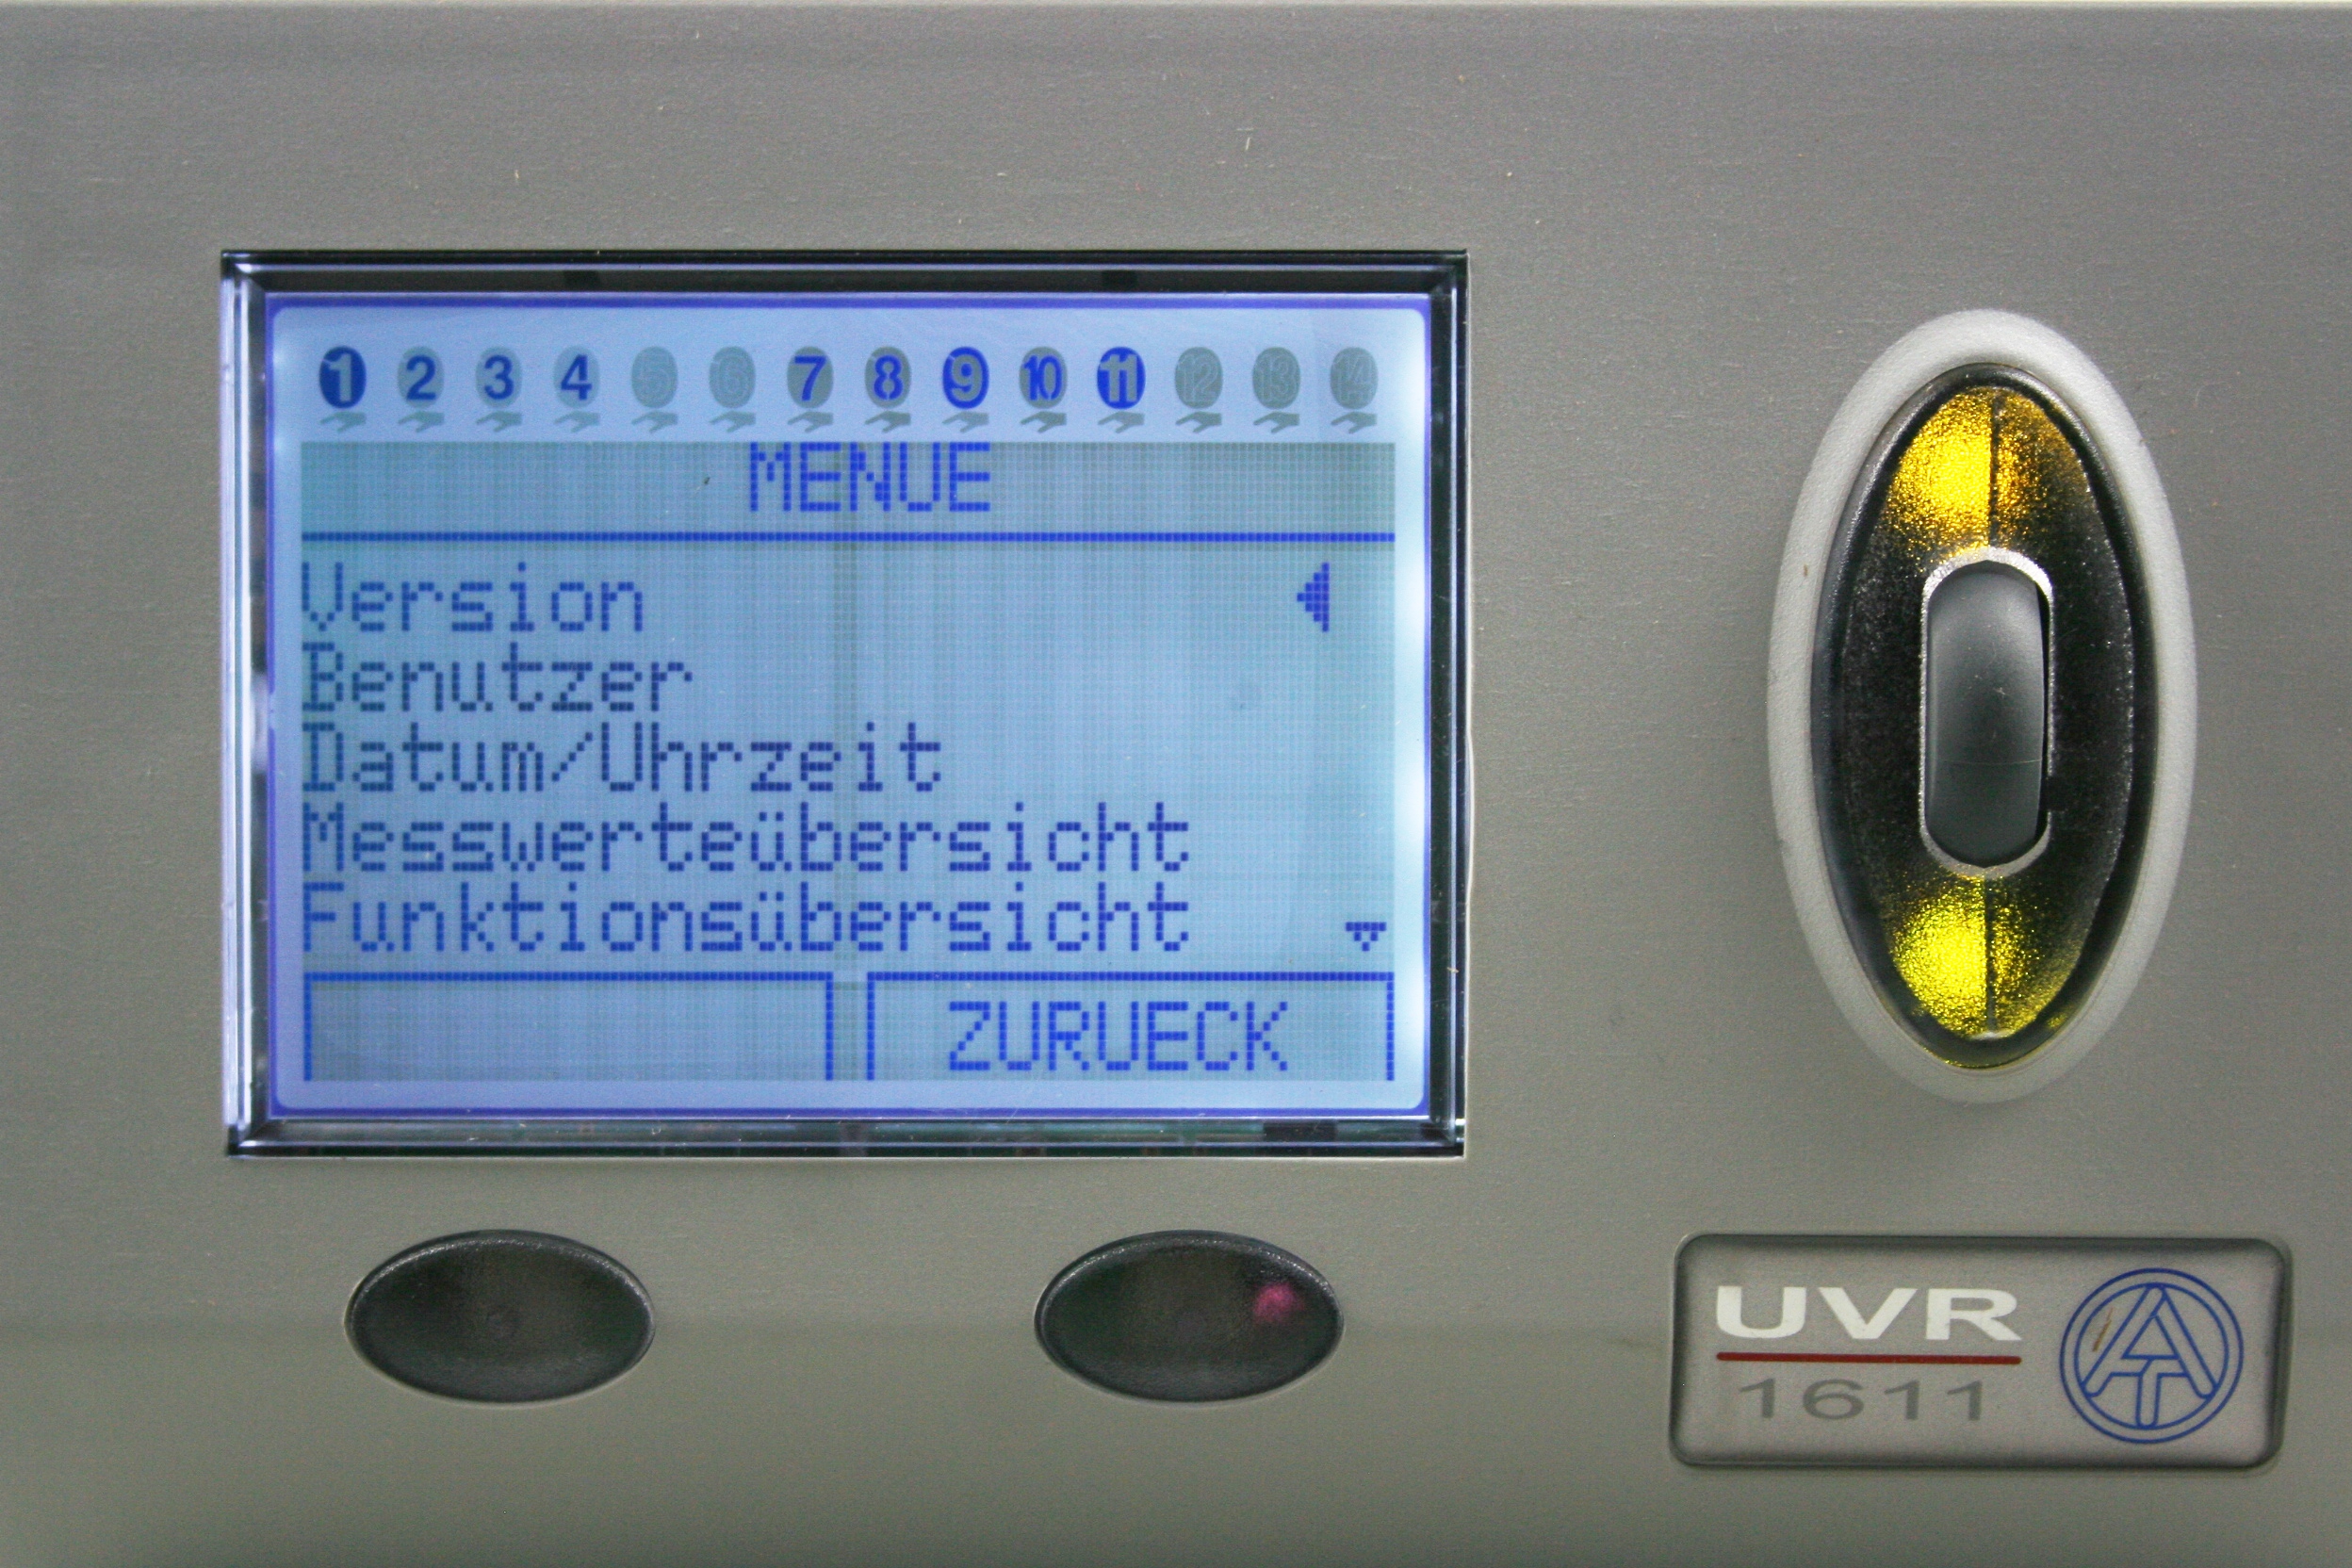 UVR 1611 lässt sich intuitiv bedinen. Alle Funktionen, Fühler und Zusatzfunktionen werden hierüber gesteuert und ausgewertet.